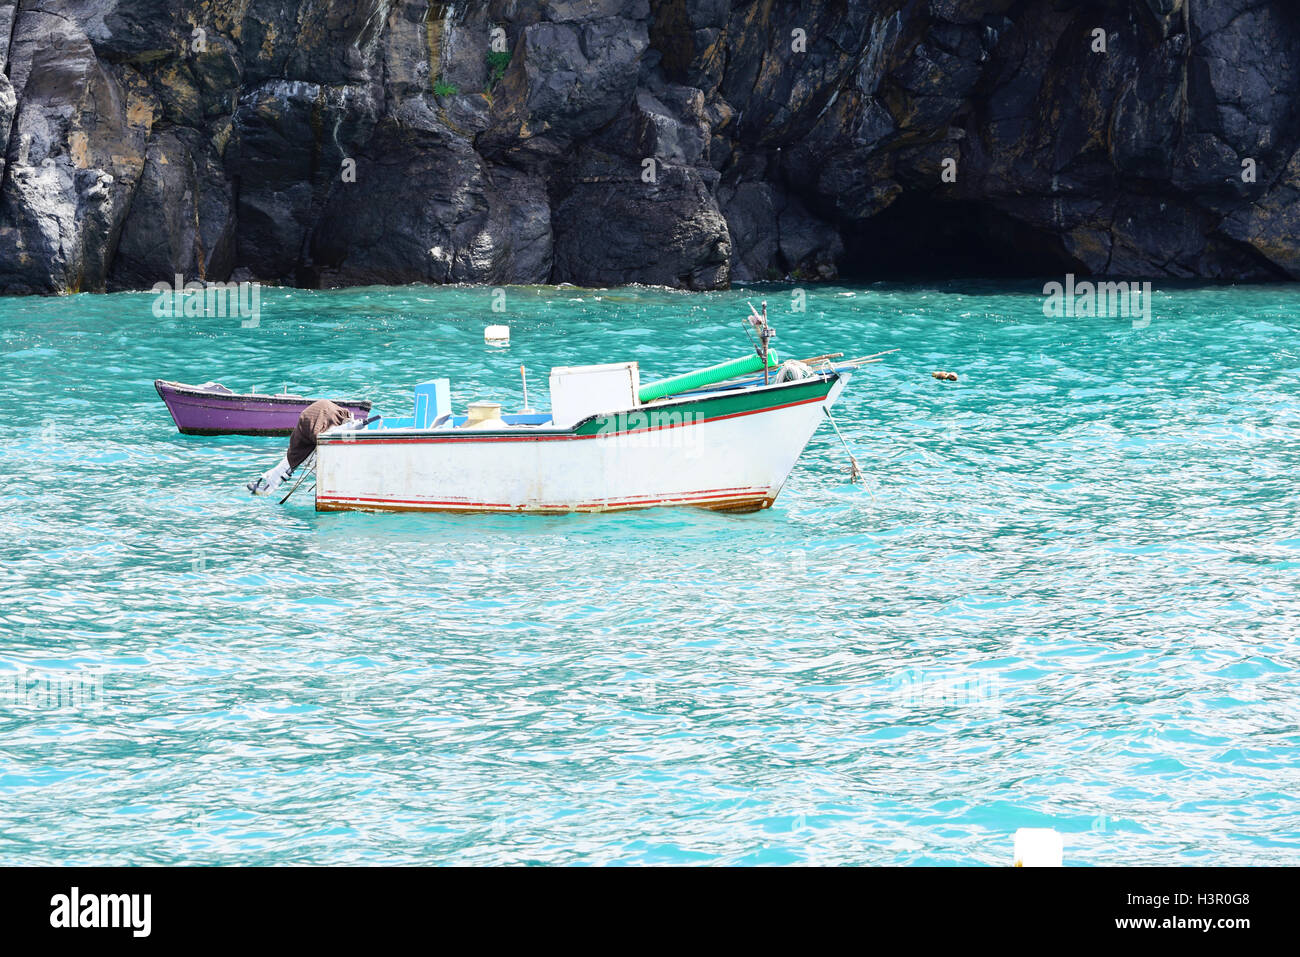 zwei krankhafte Angelboote/Fischerboote auf dem grünen Meer Stockfoto